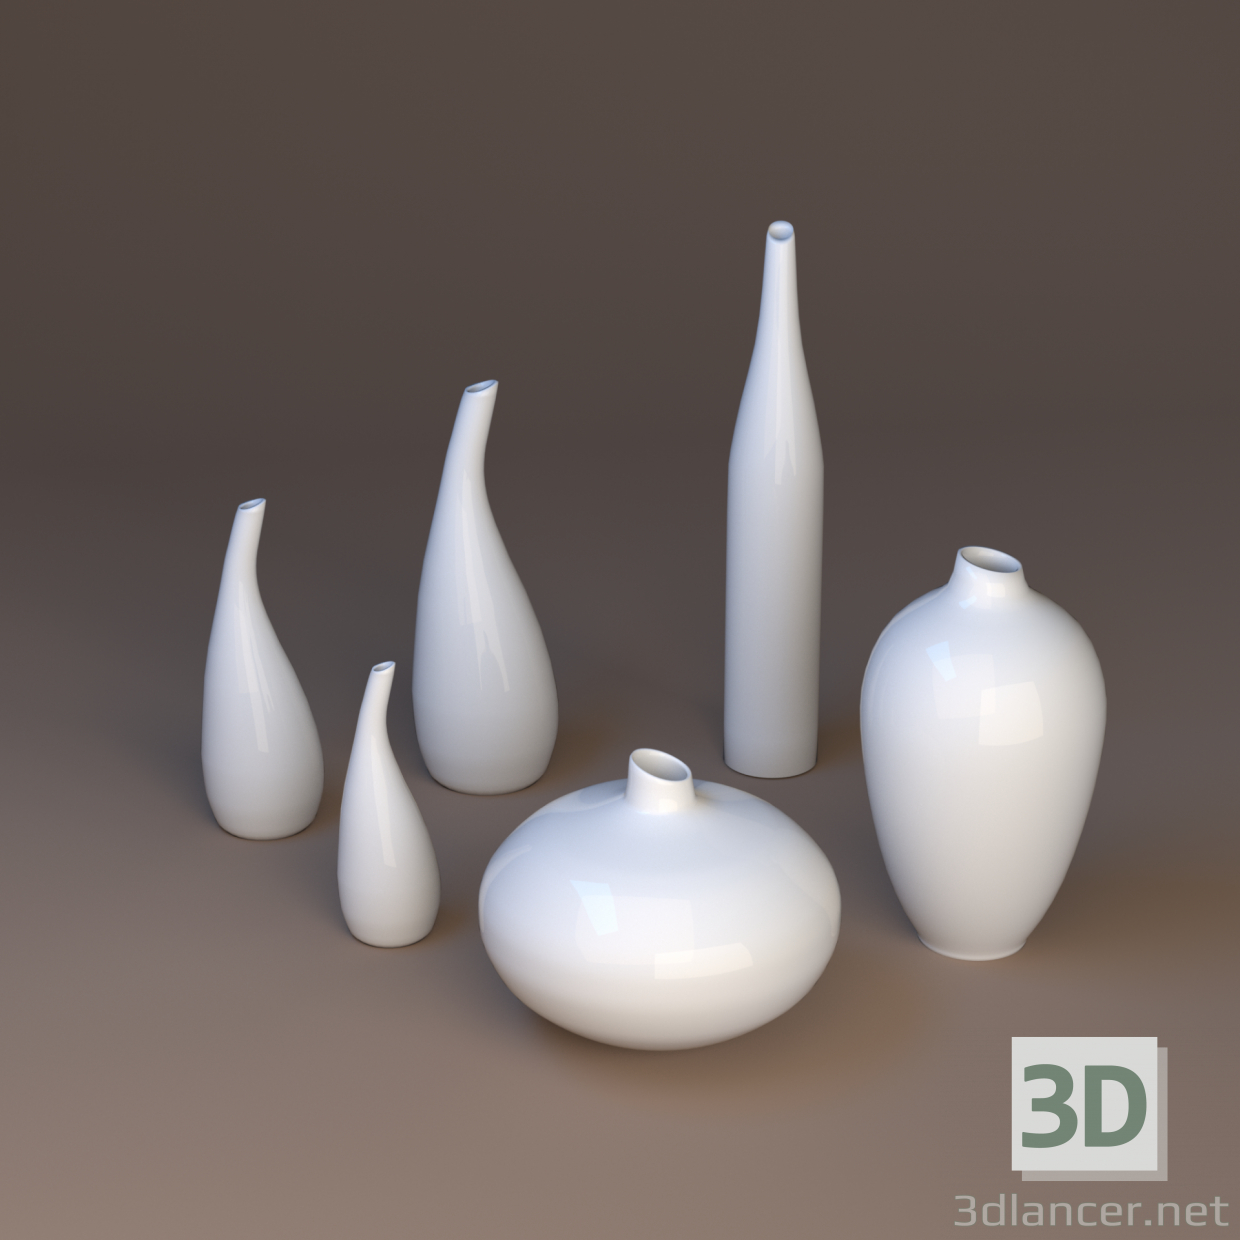 3D Porselen vazolar modeli satın - render